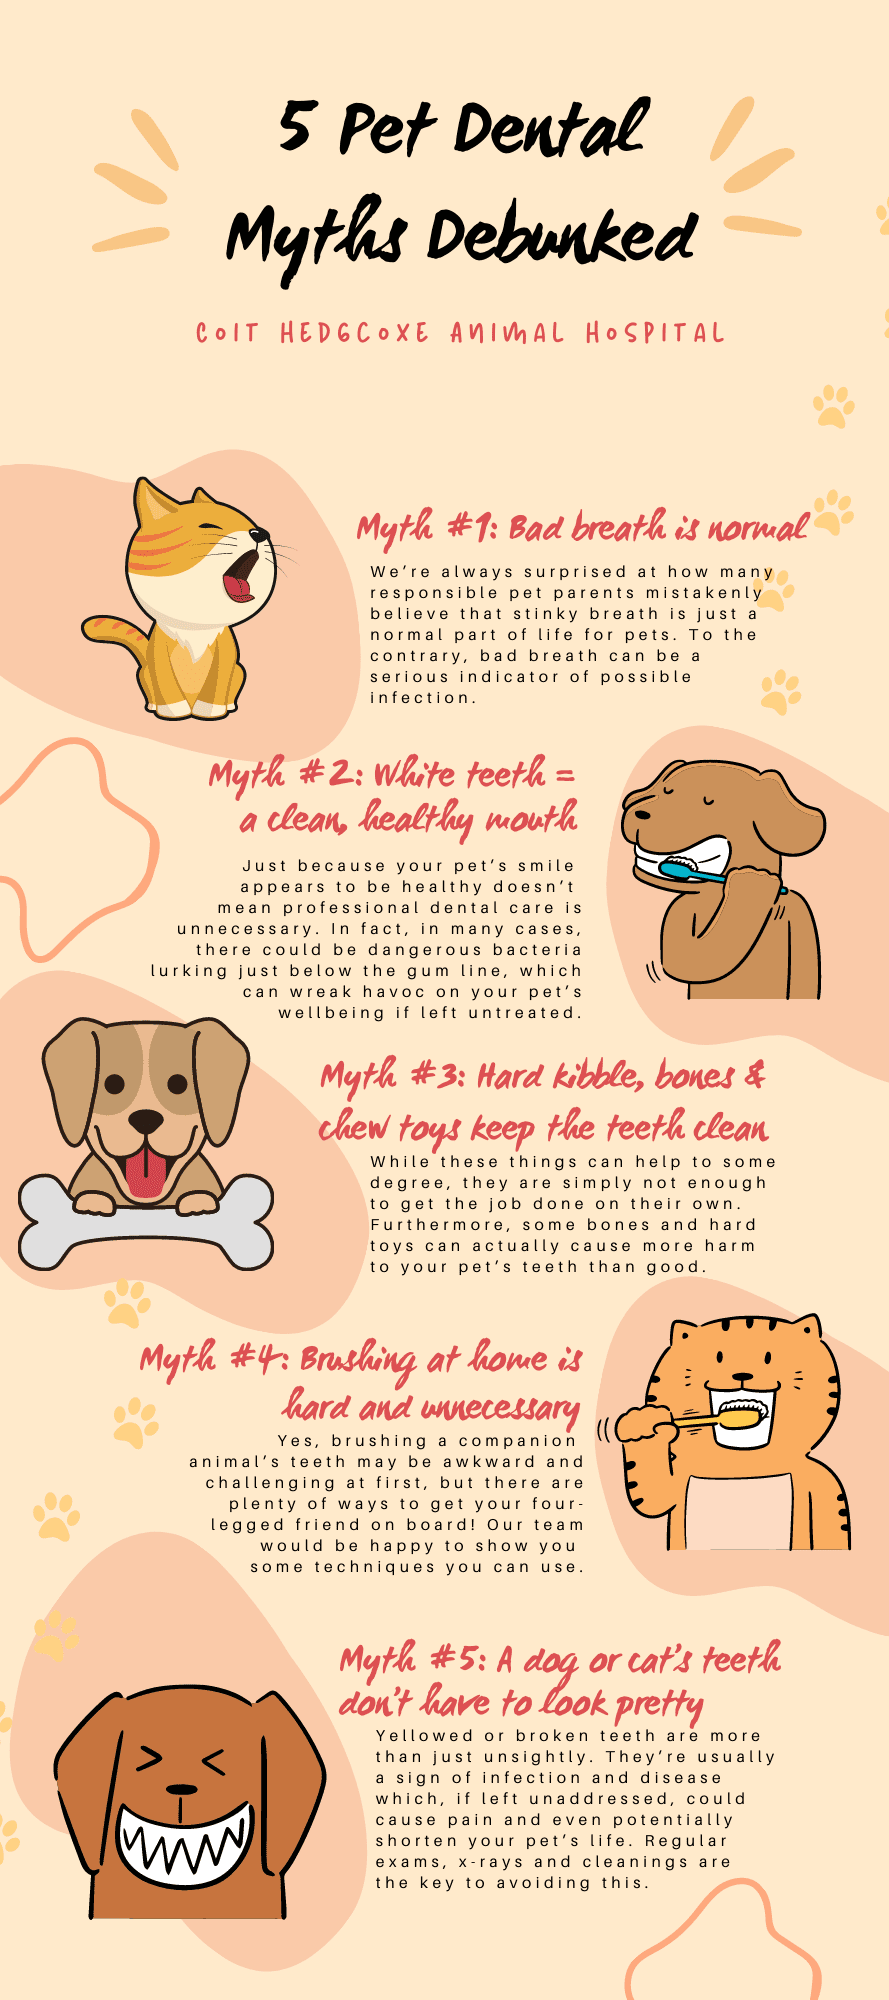 5 Pet Dental Myths Debunked